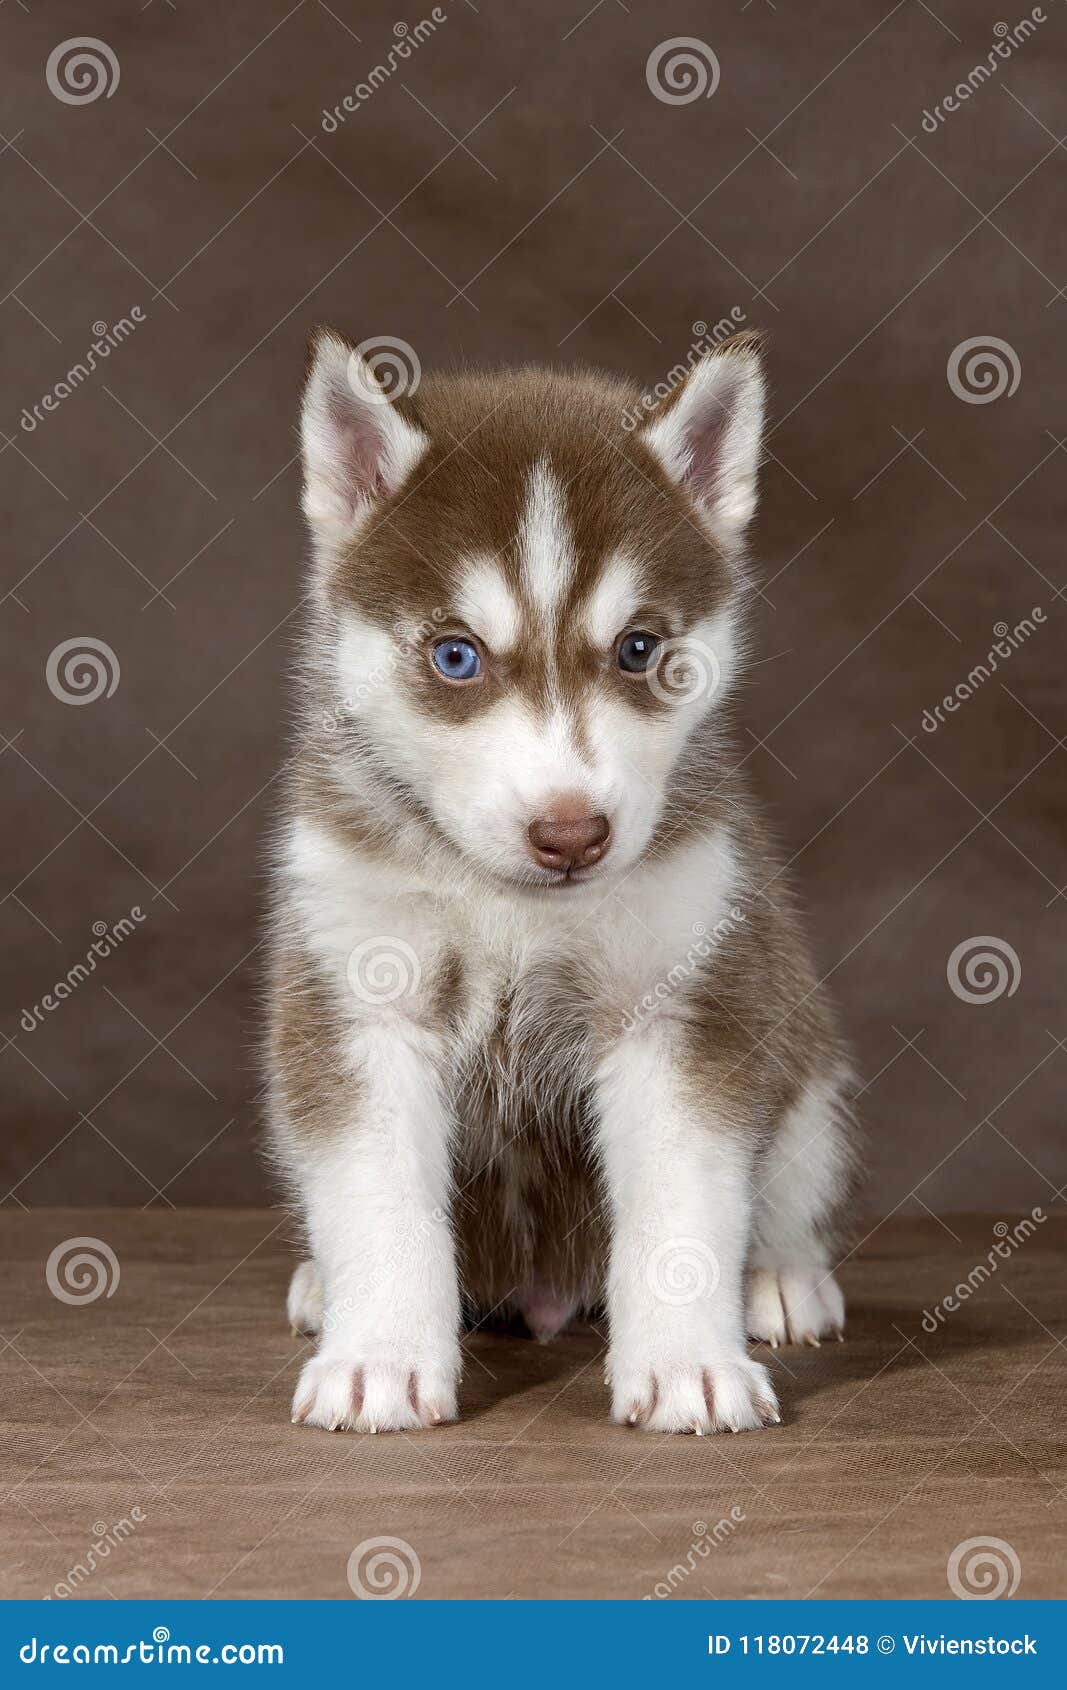 dog husky small